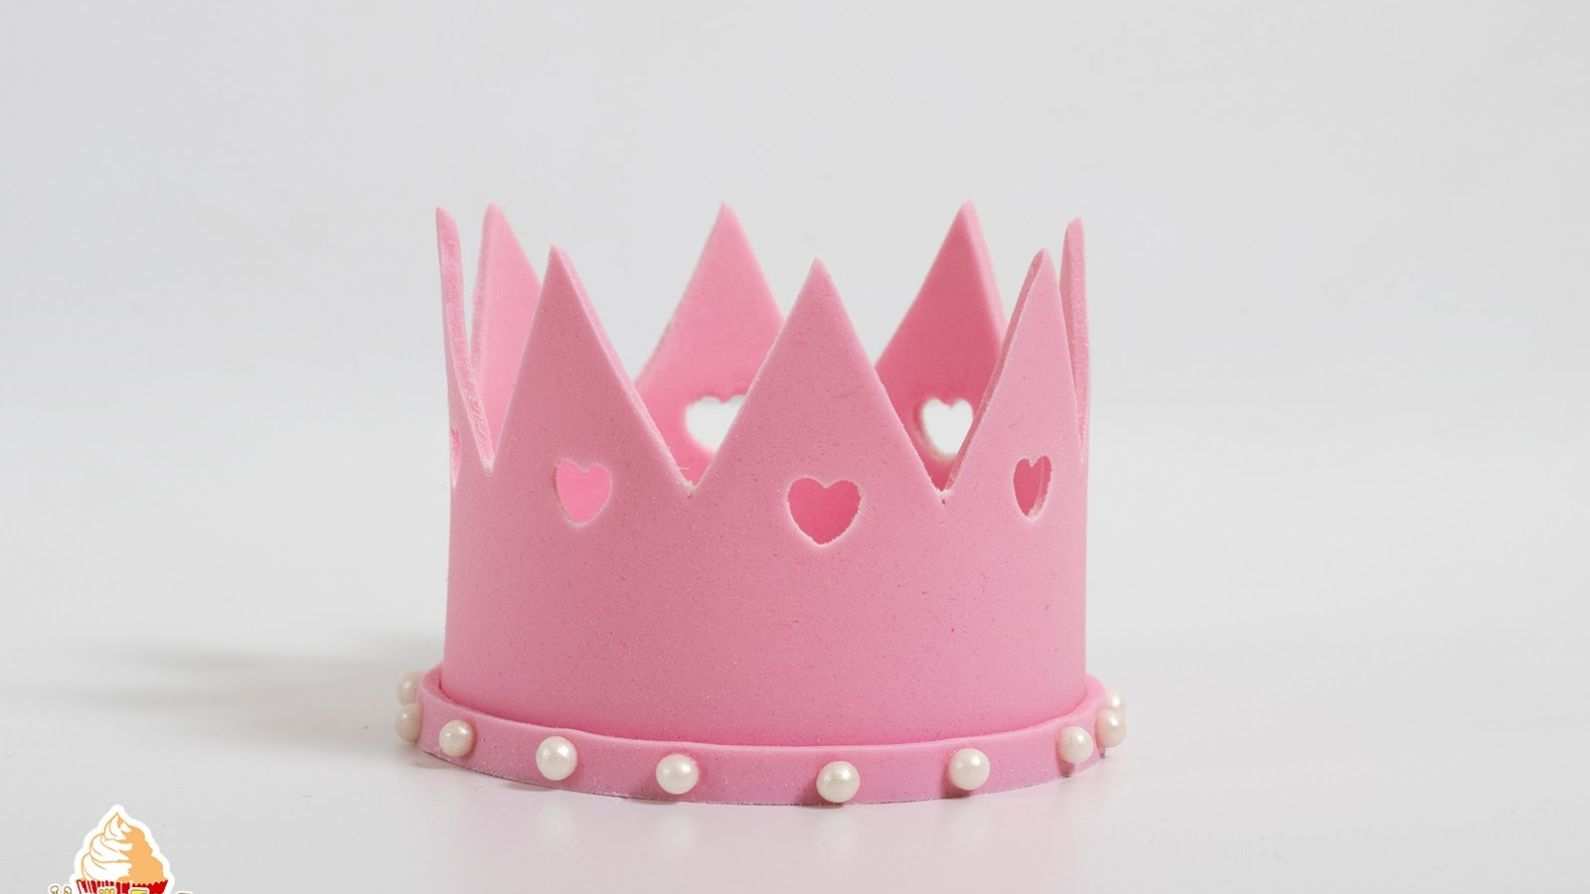 Prinzessin Krone Aus Blutenpaste Tutorial Vanilletanz Prinzessin Krone Prinzessinnen Torte Besondere Geburtstagskuchen